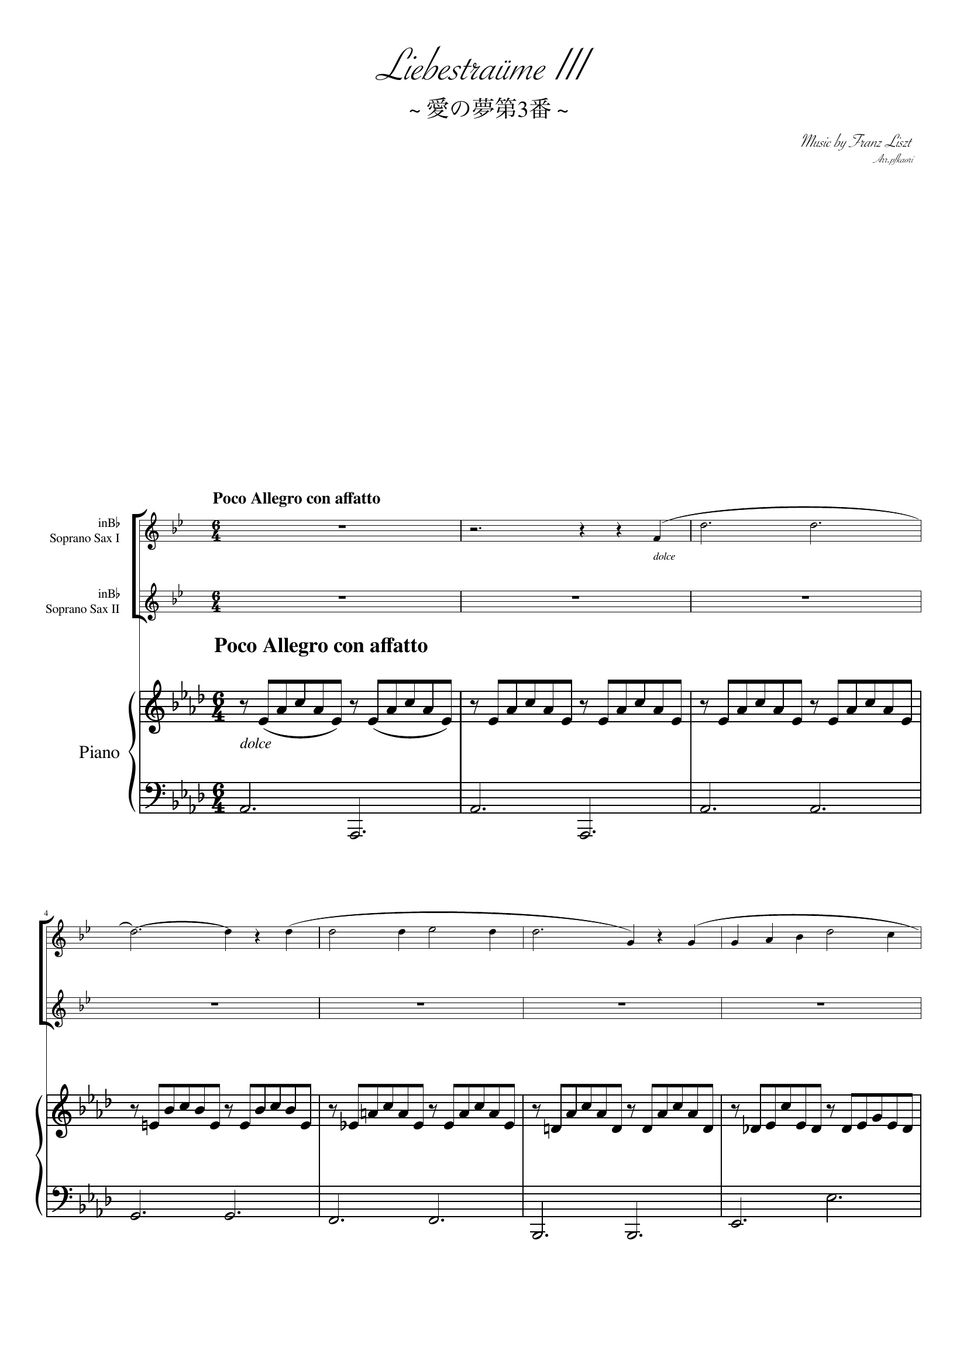 フランツ・リスト - 愛の夢第３番 (As・ピアノトリオ/ソプラノサックスデュオ) by pfkaori